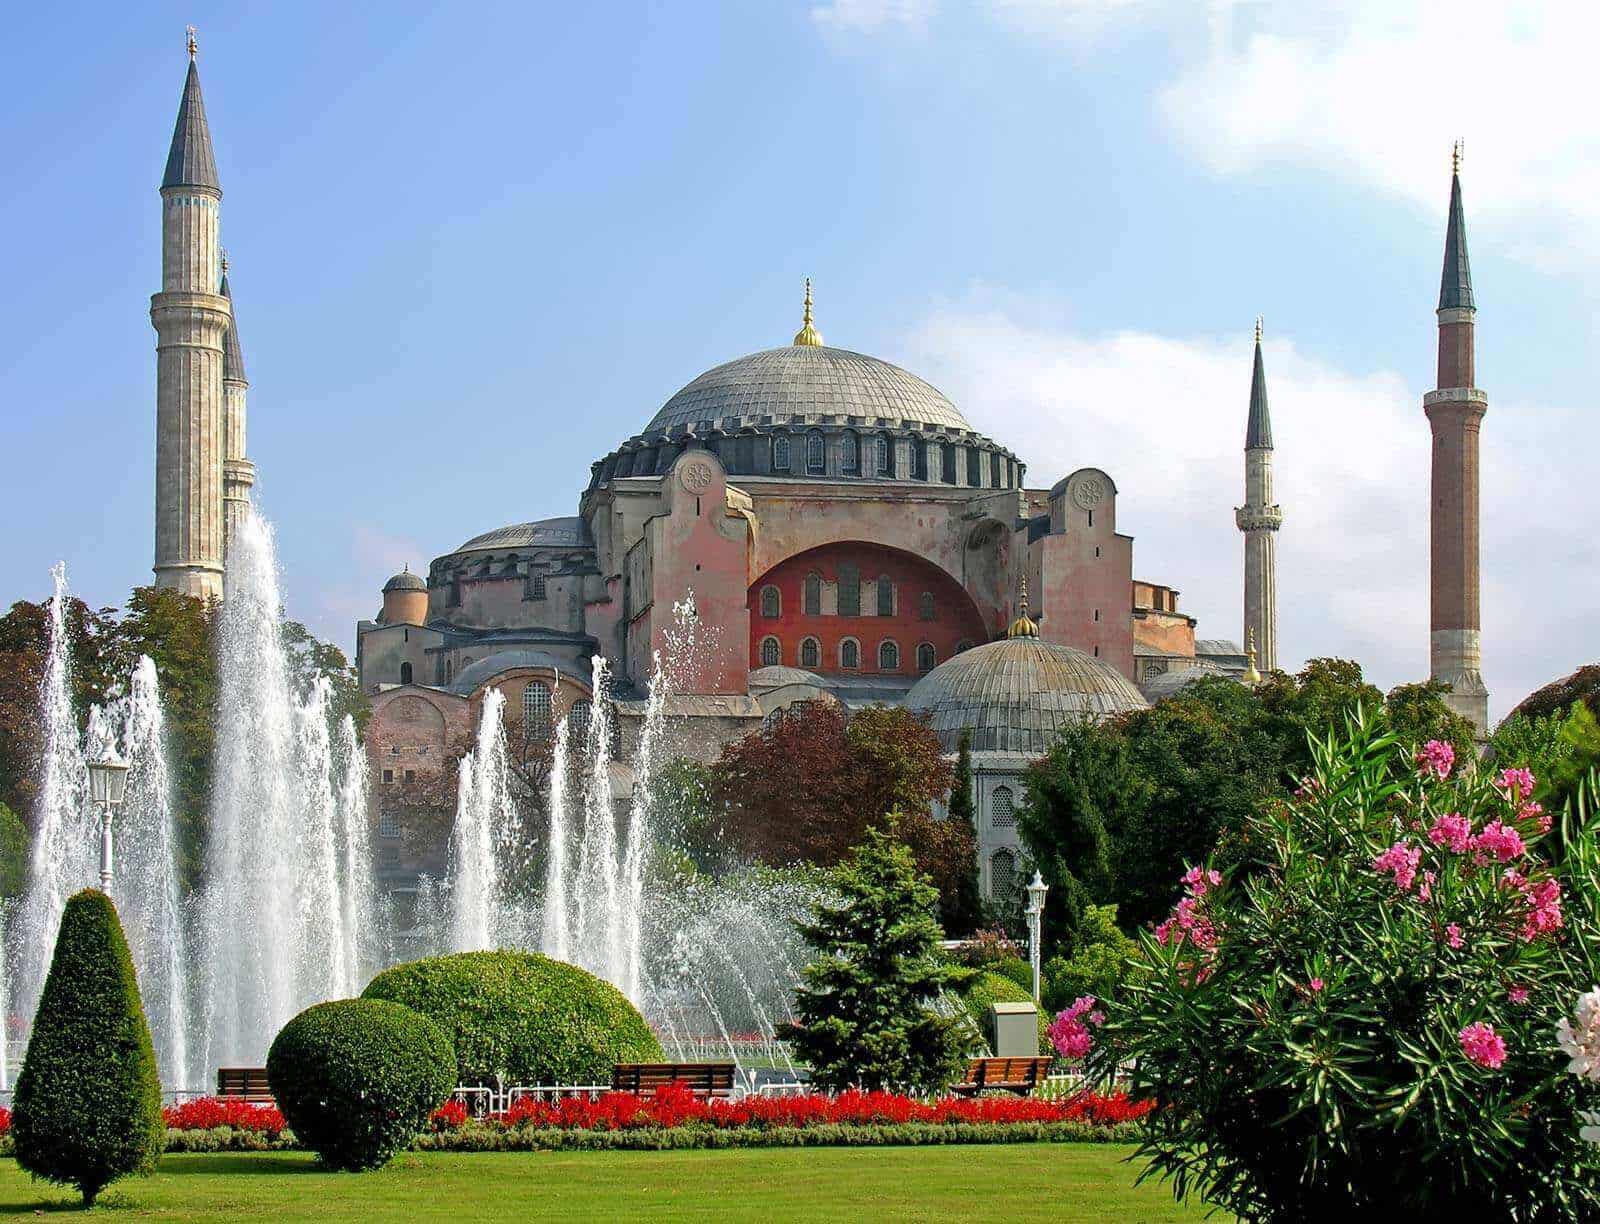 Hagia Sophia Mosque 